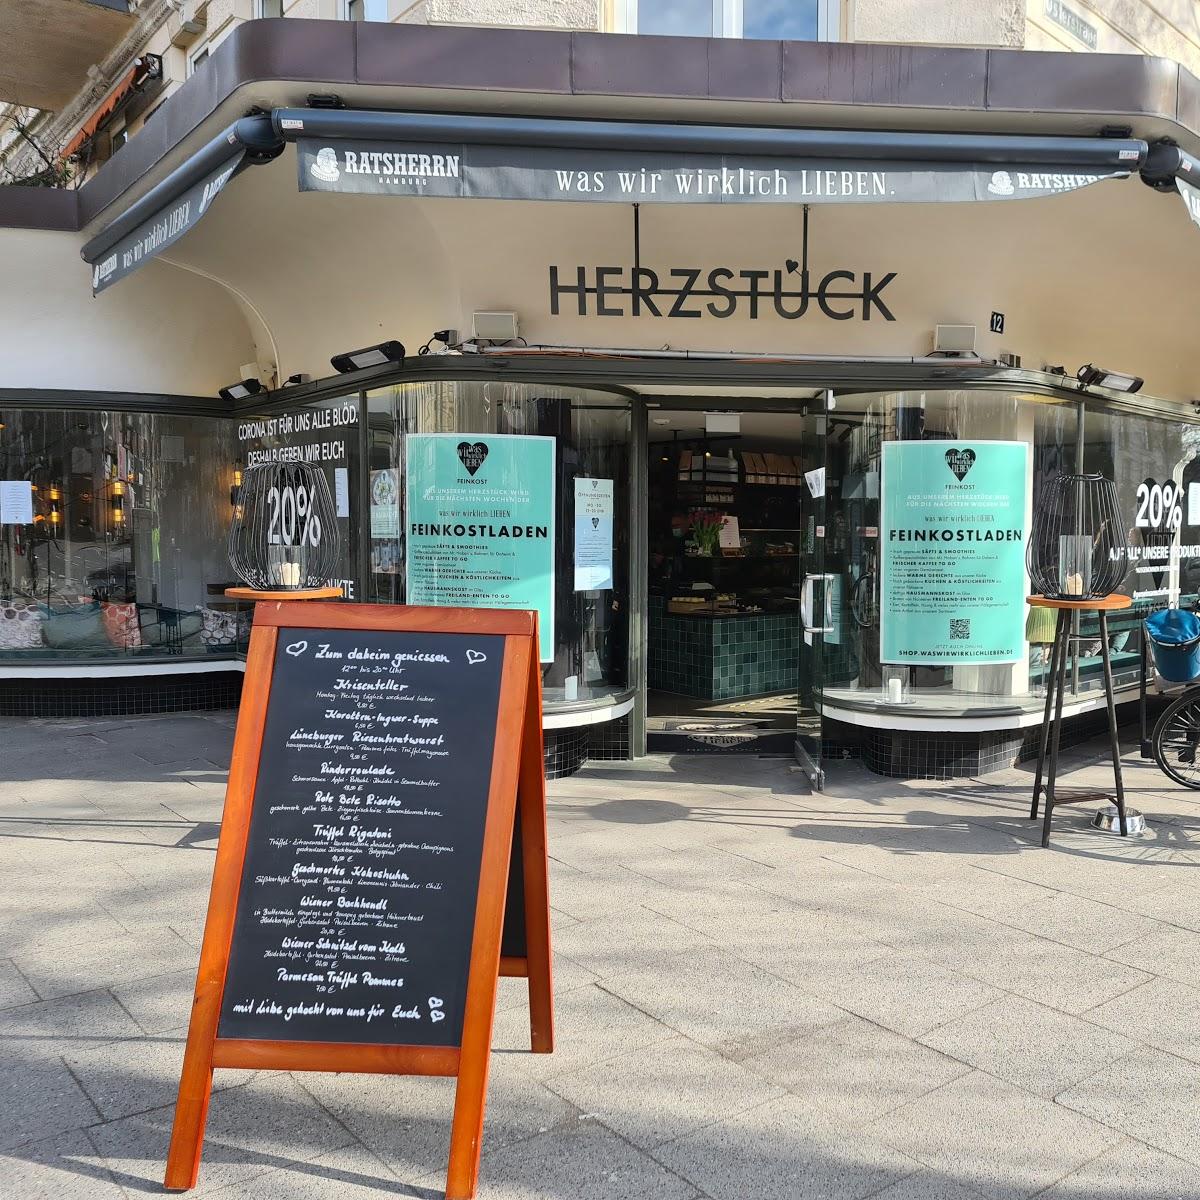 Restaurant "was wir wirklich LIEBEN. Herzstück" in Hamburg